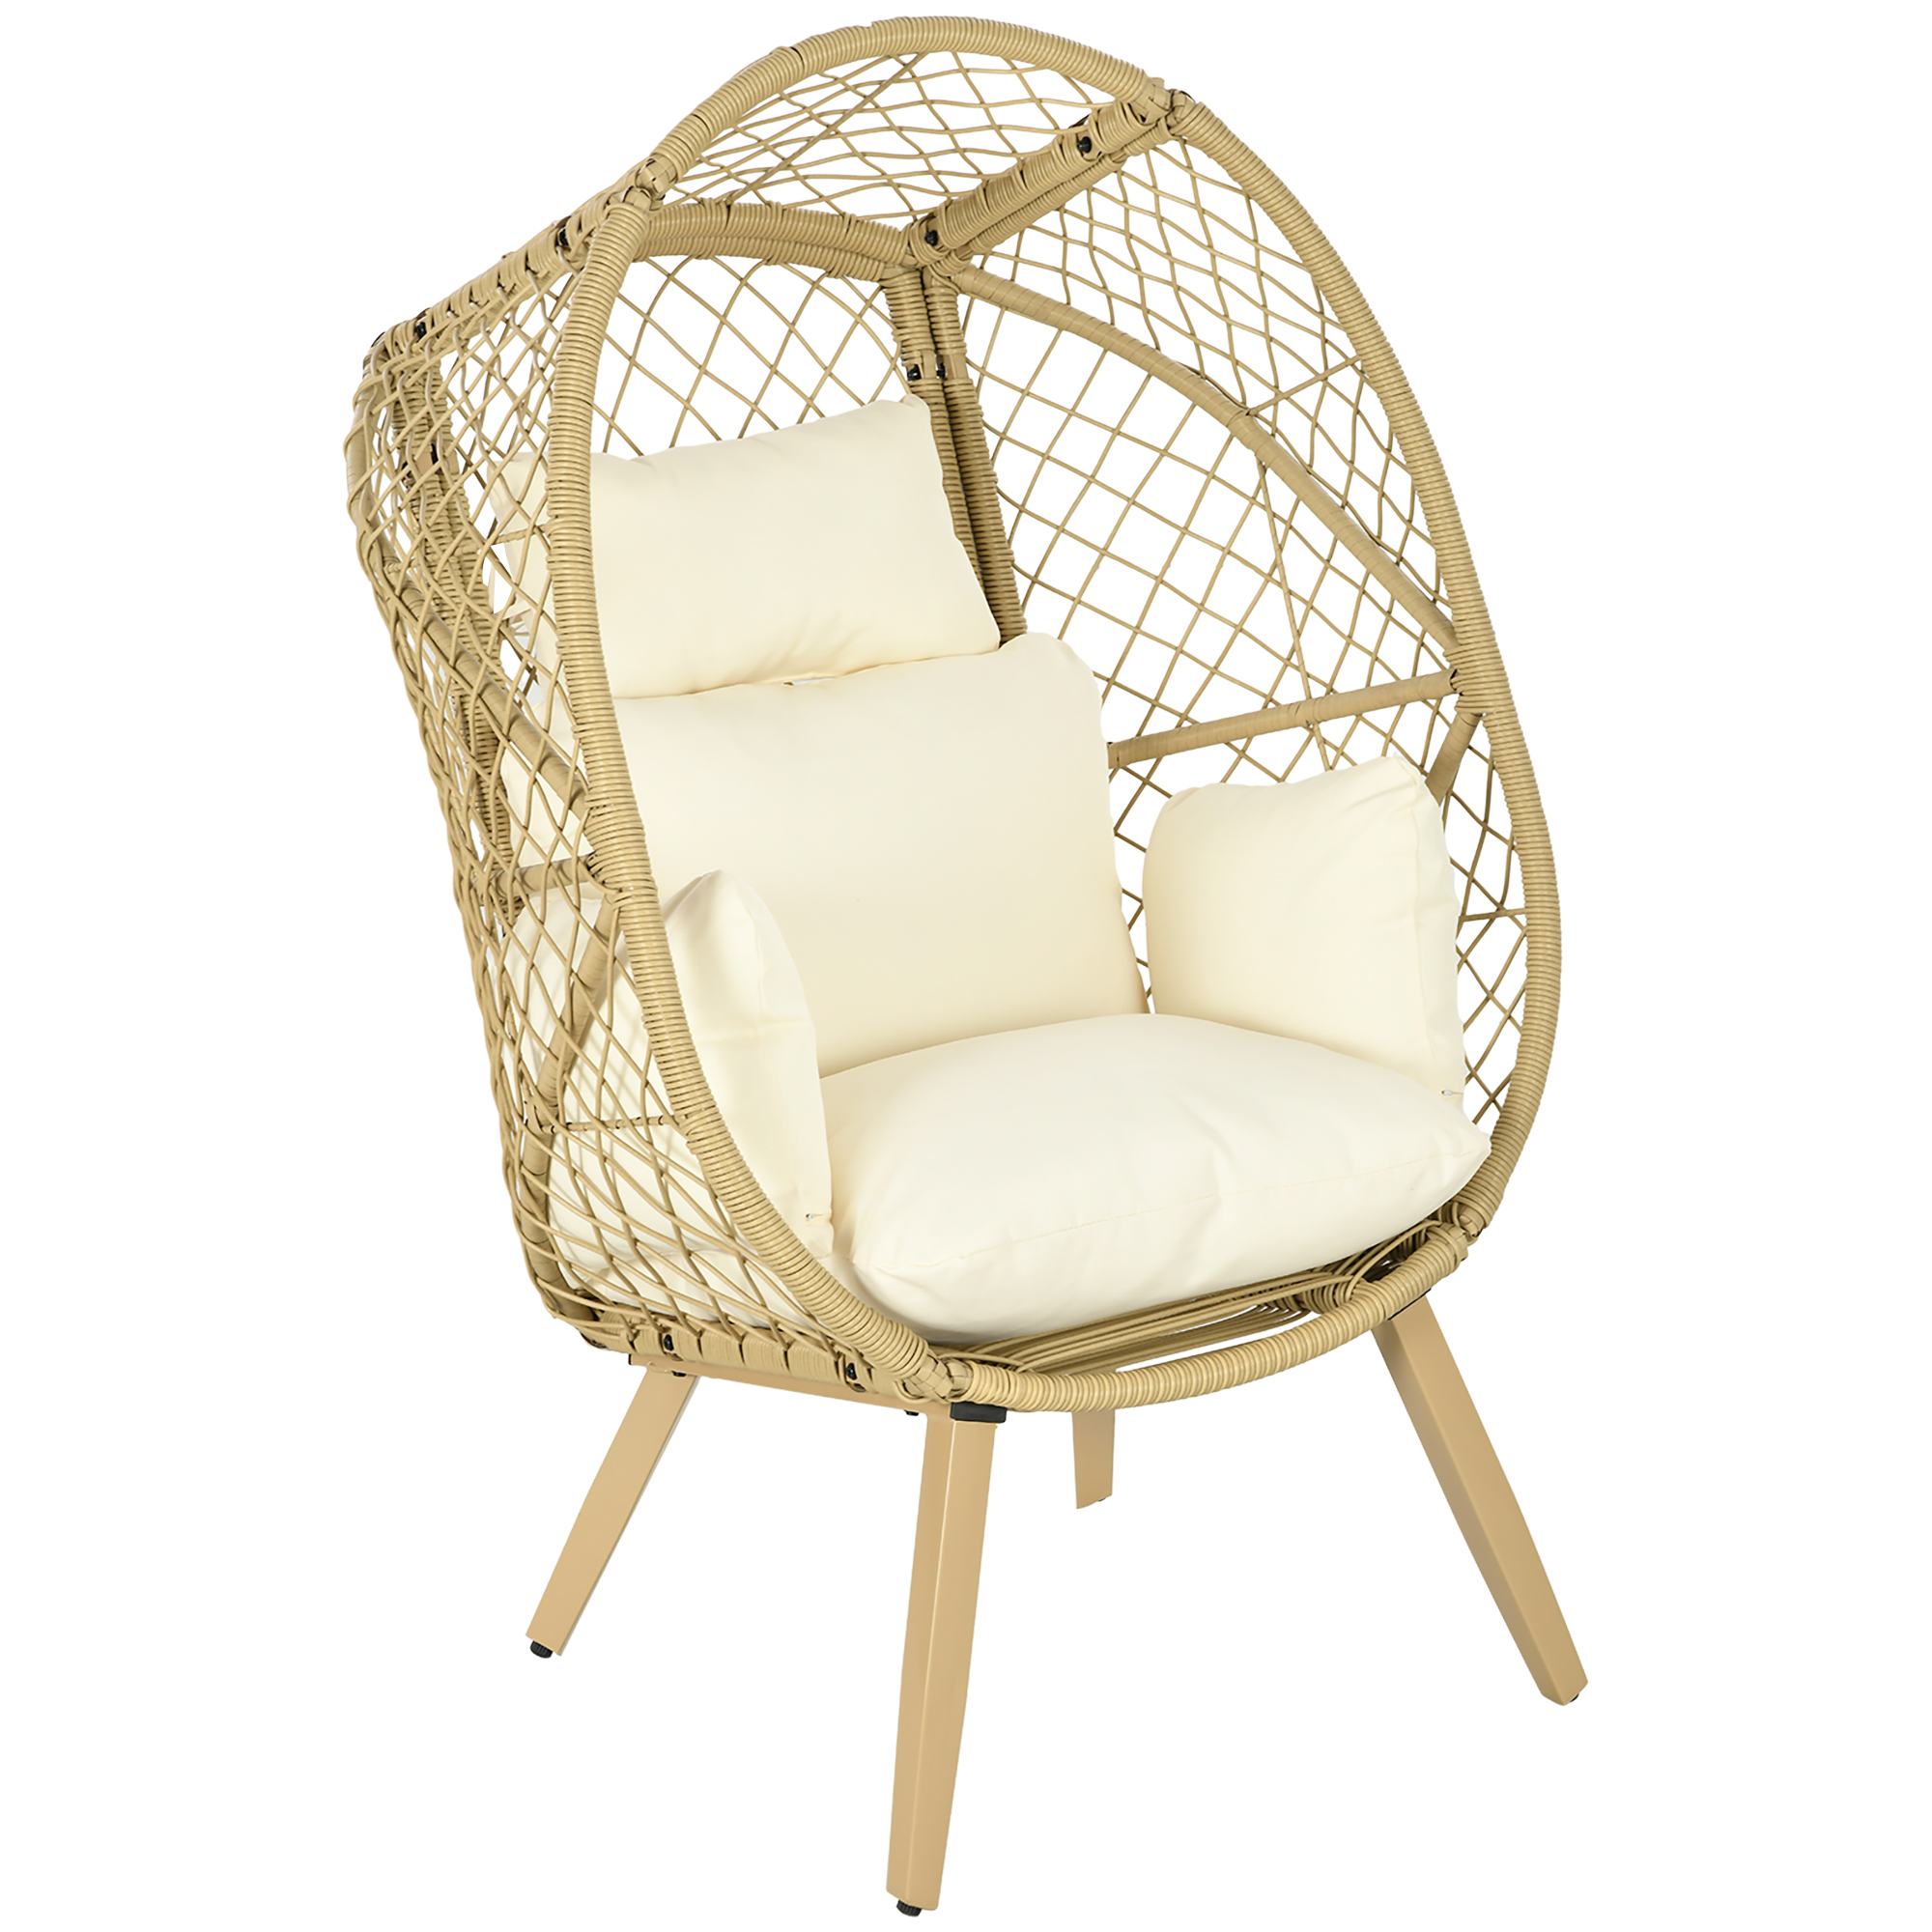 PE Rattan Egg Chair w/ Cushion, Patio Leisure Chair, Cream